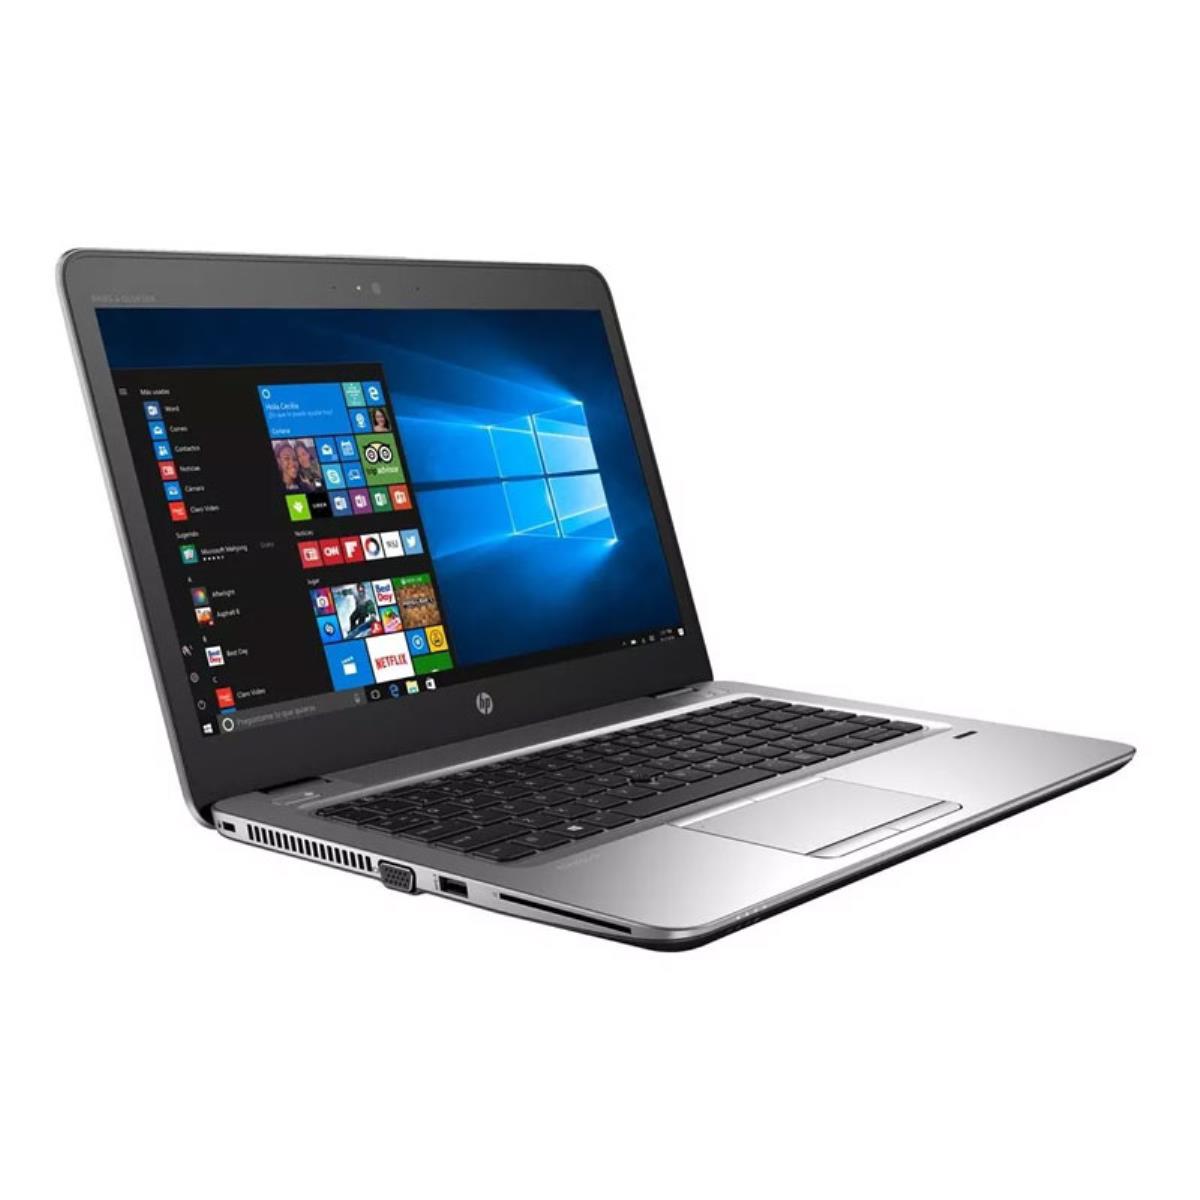 Portátil Ultrabook HP Elitebook 840 G3 GRADO B con teclado en castellano (Intel Core i5 6200U 2.3Ghz/8GB/240SSD-M.2/14FHD/NO-DVD/W10P) Preinstalado